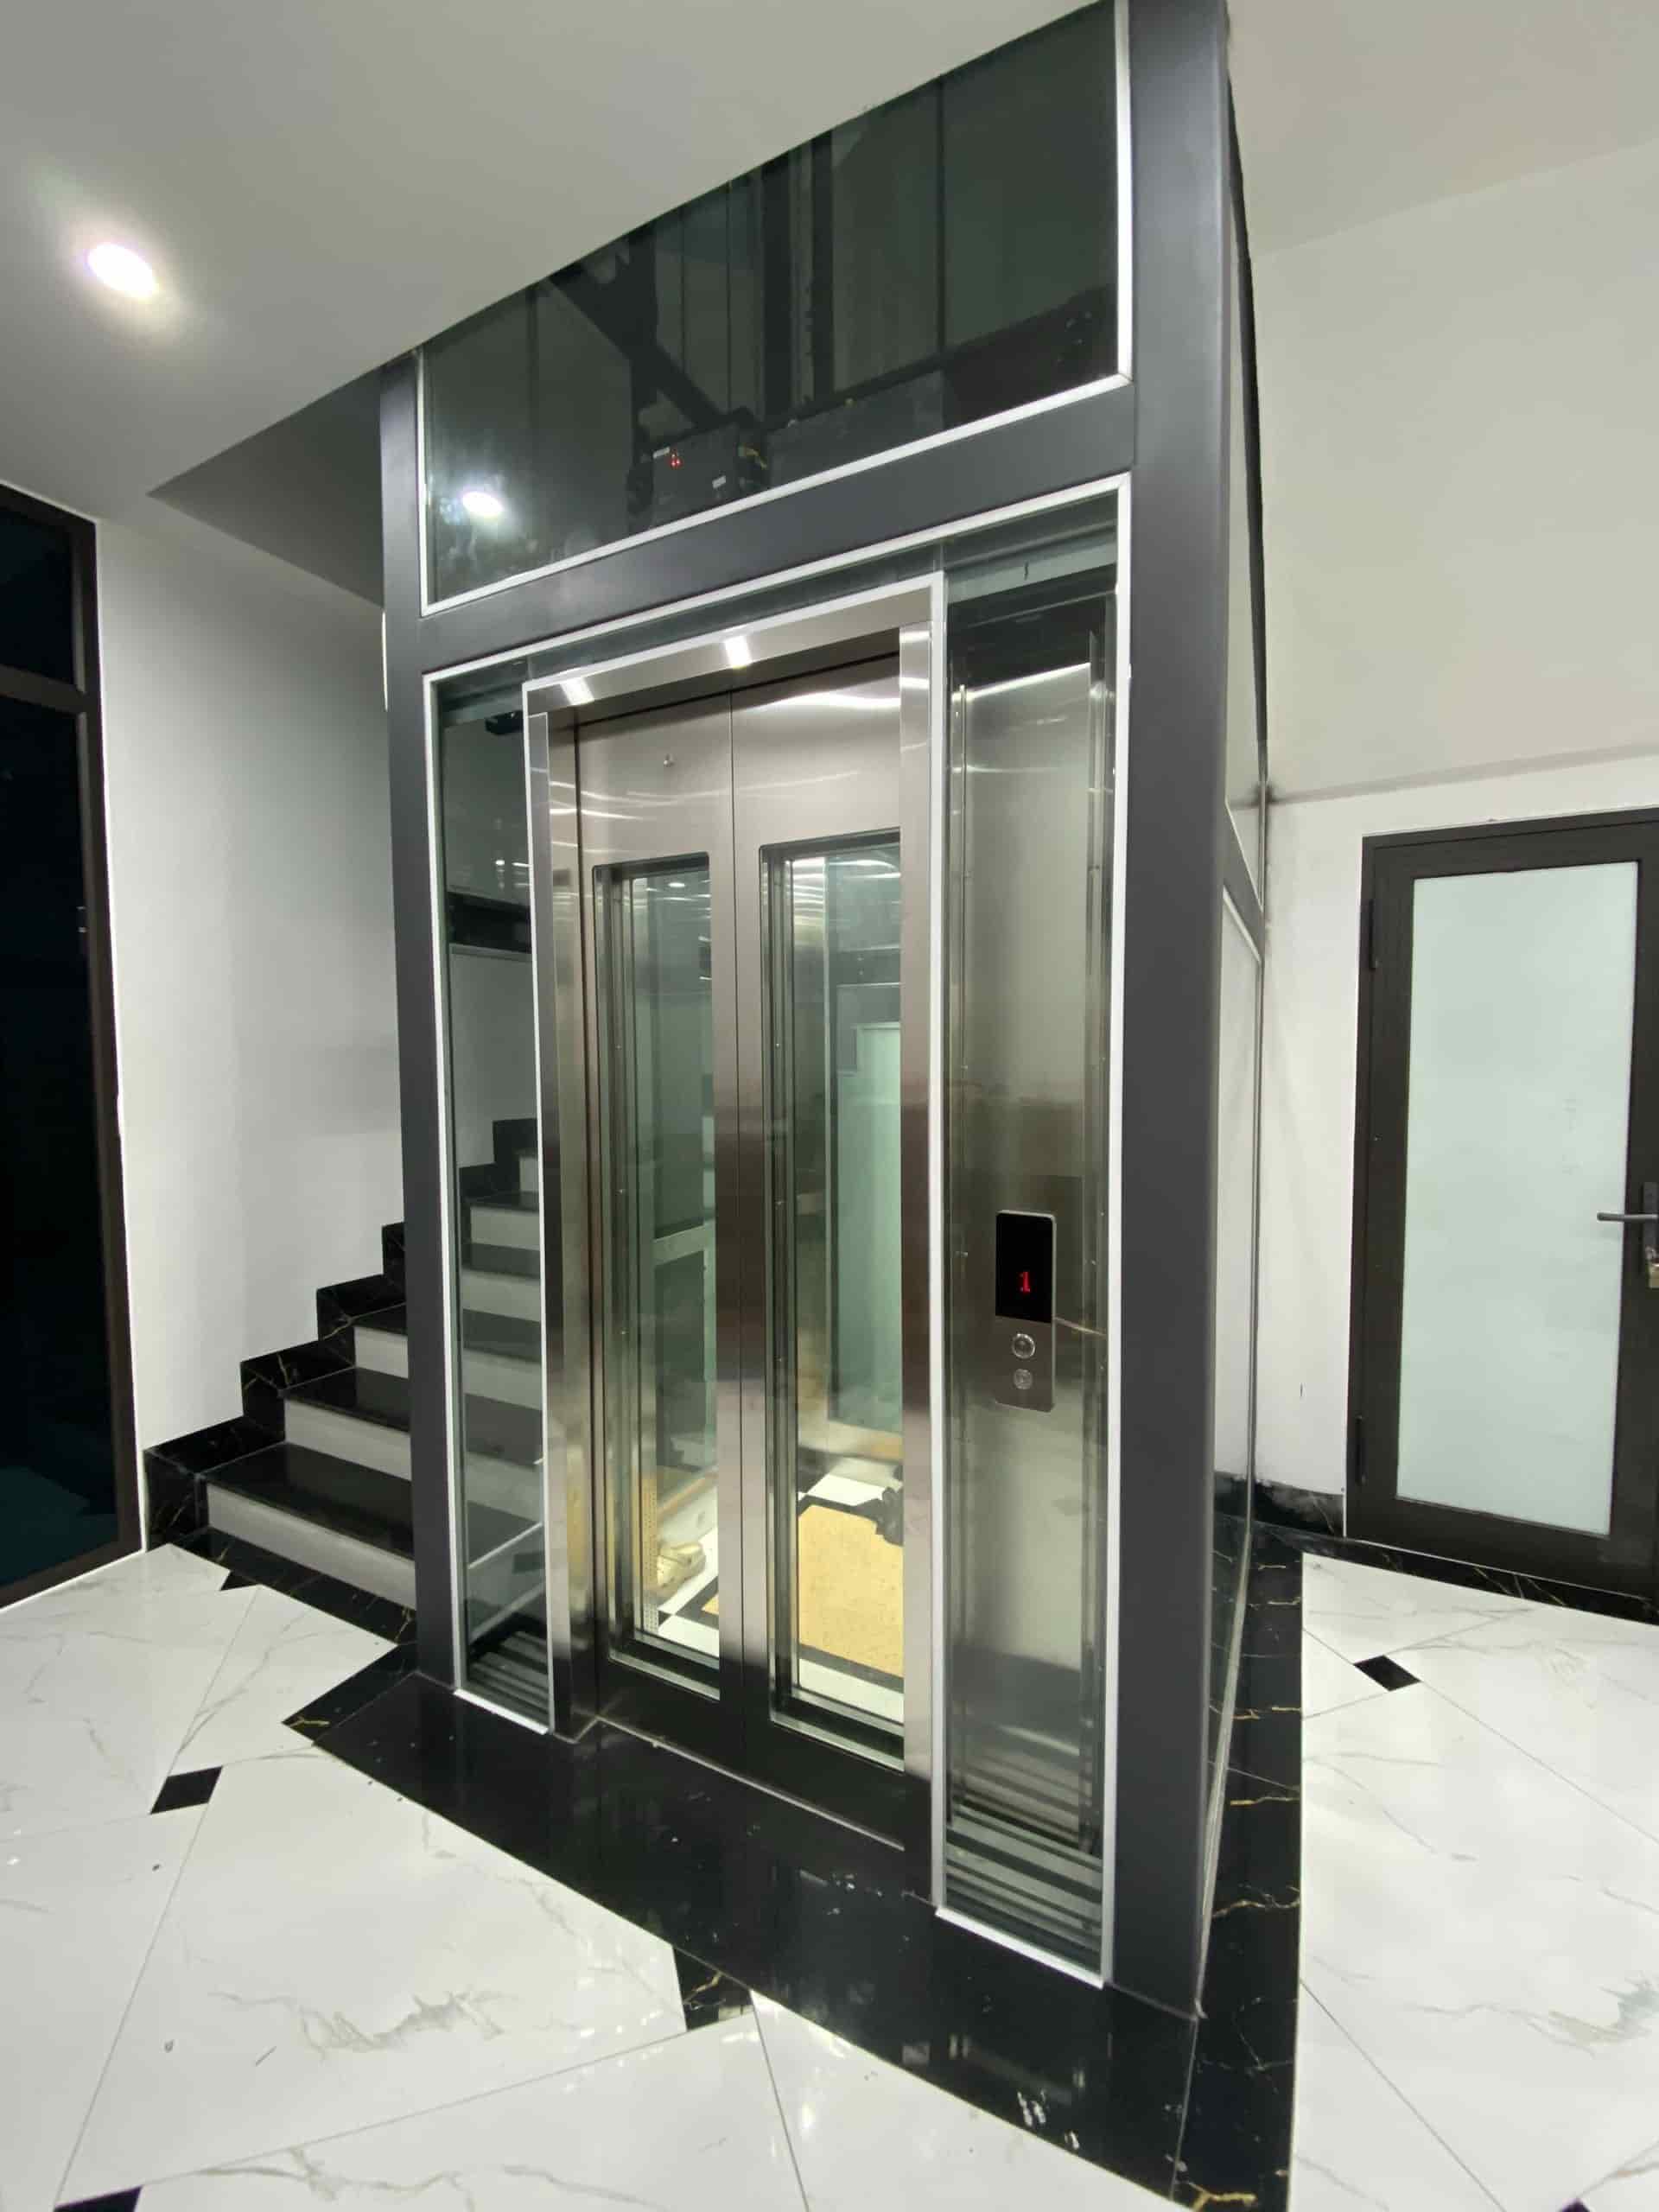 Báo giá các loại thang máy gia đình theo cấu tạo tại Yên Bái